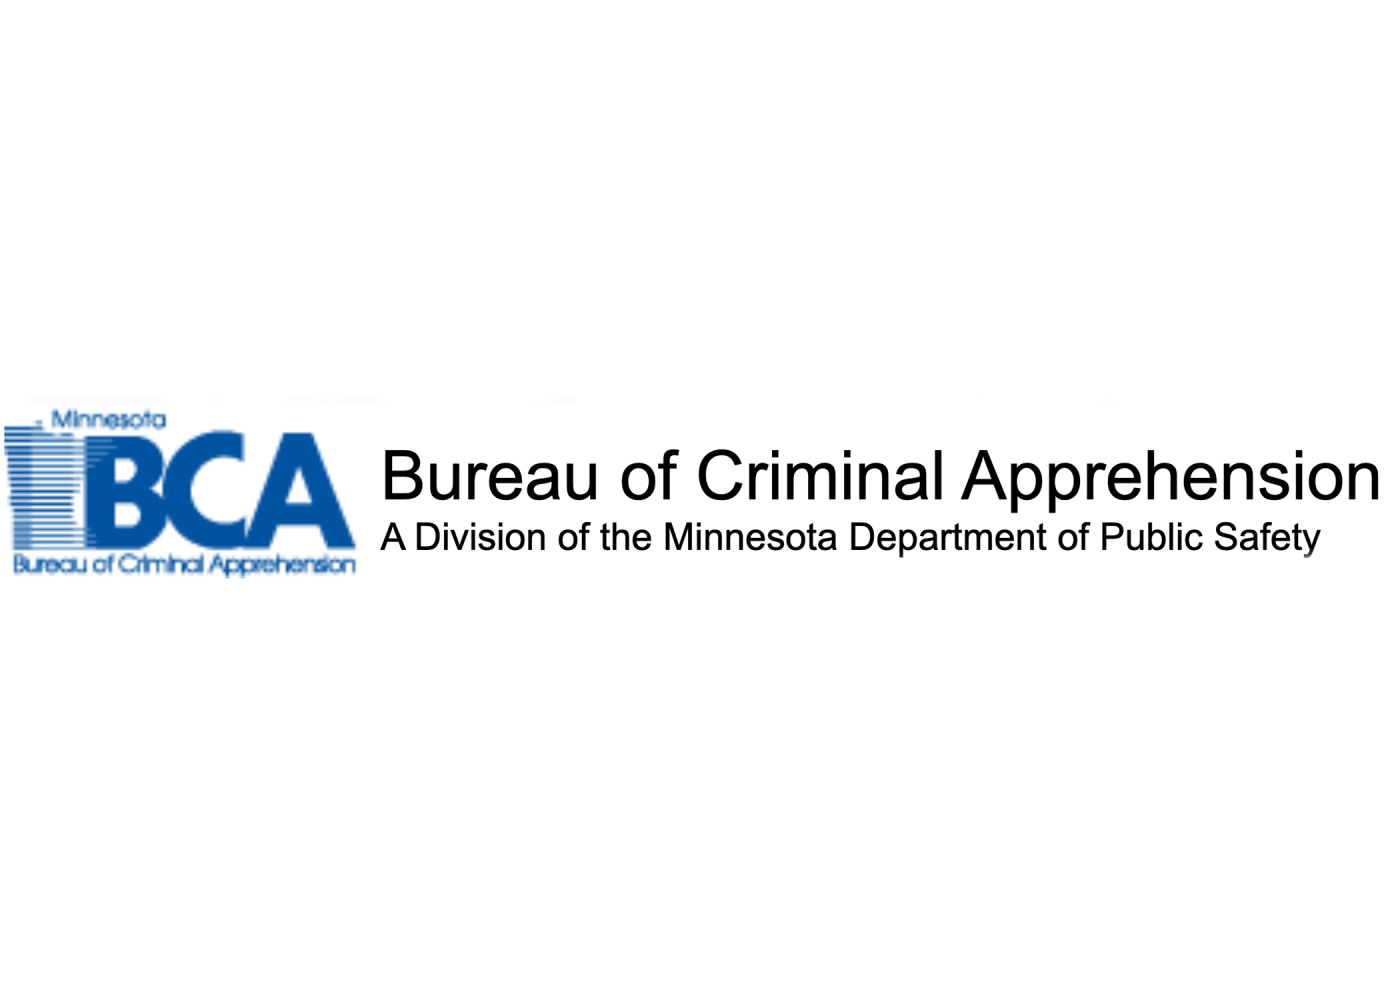 Bca letter logo design on white background Vector Image